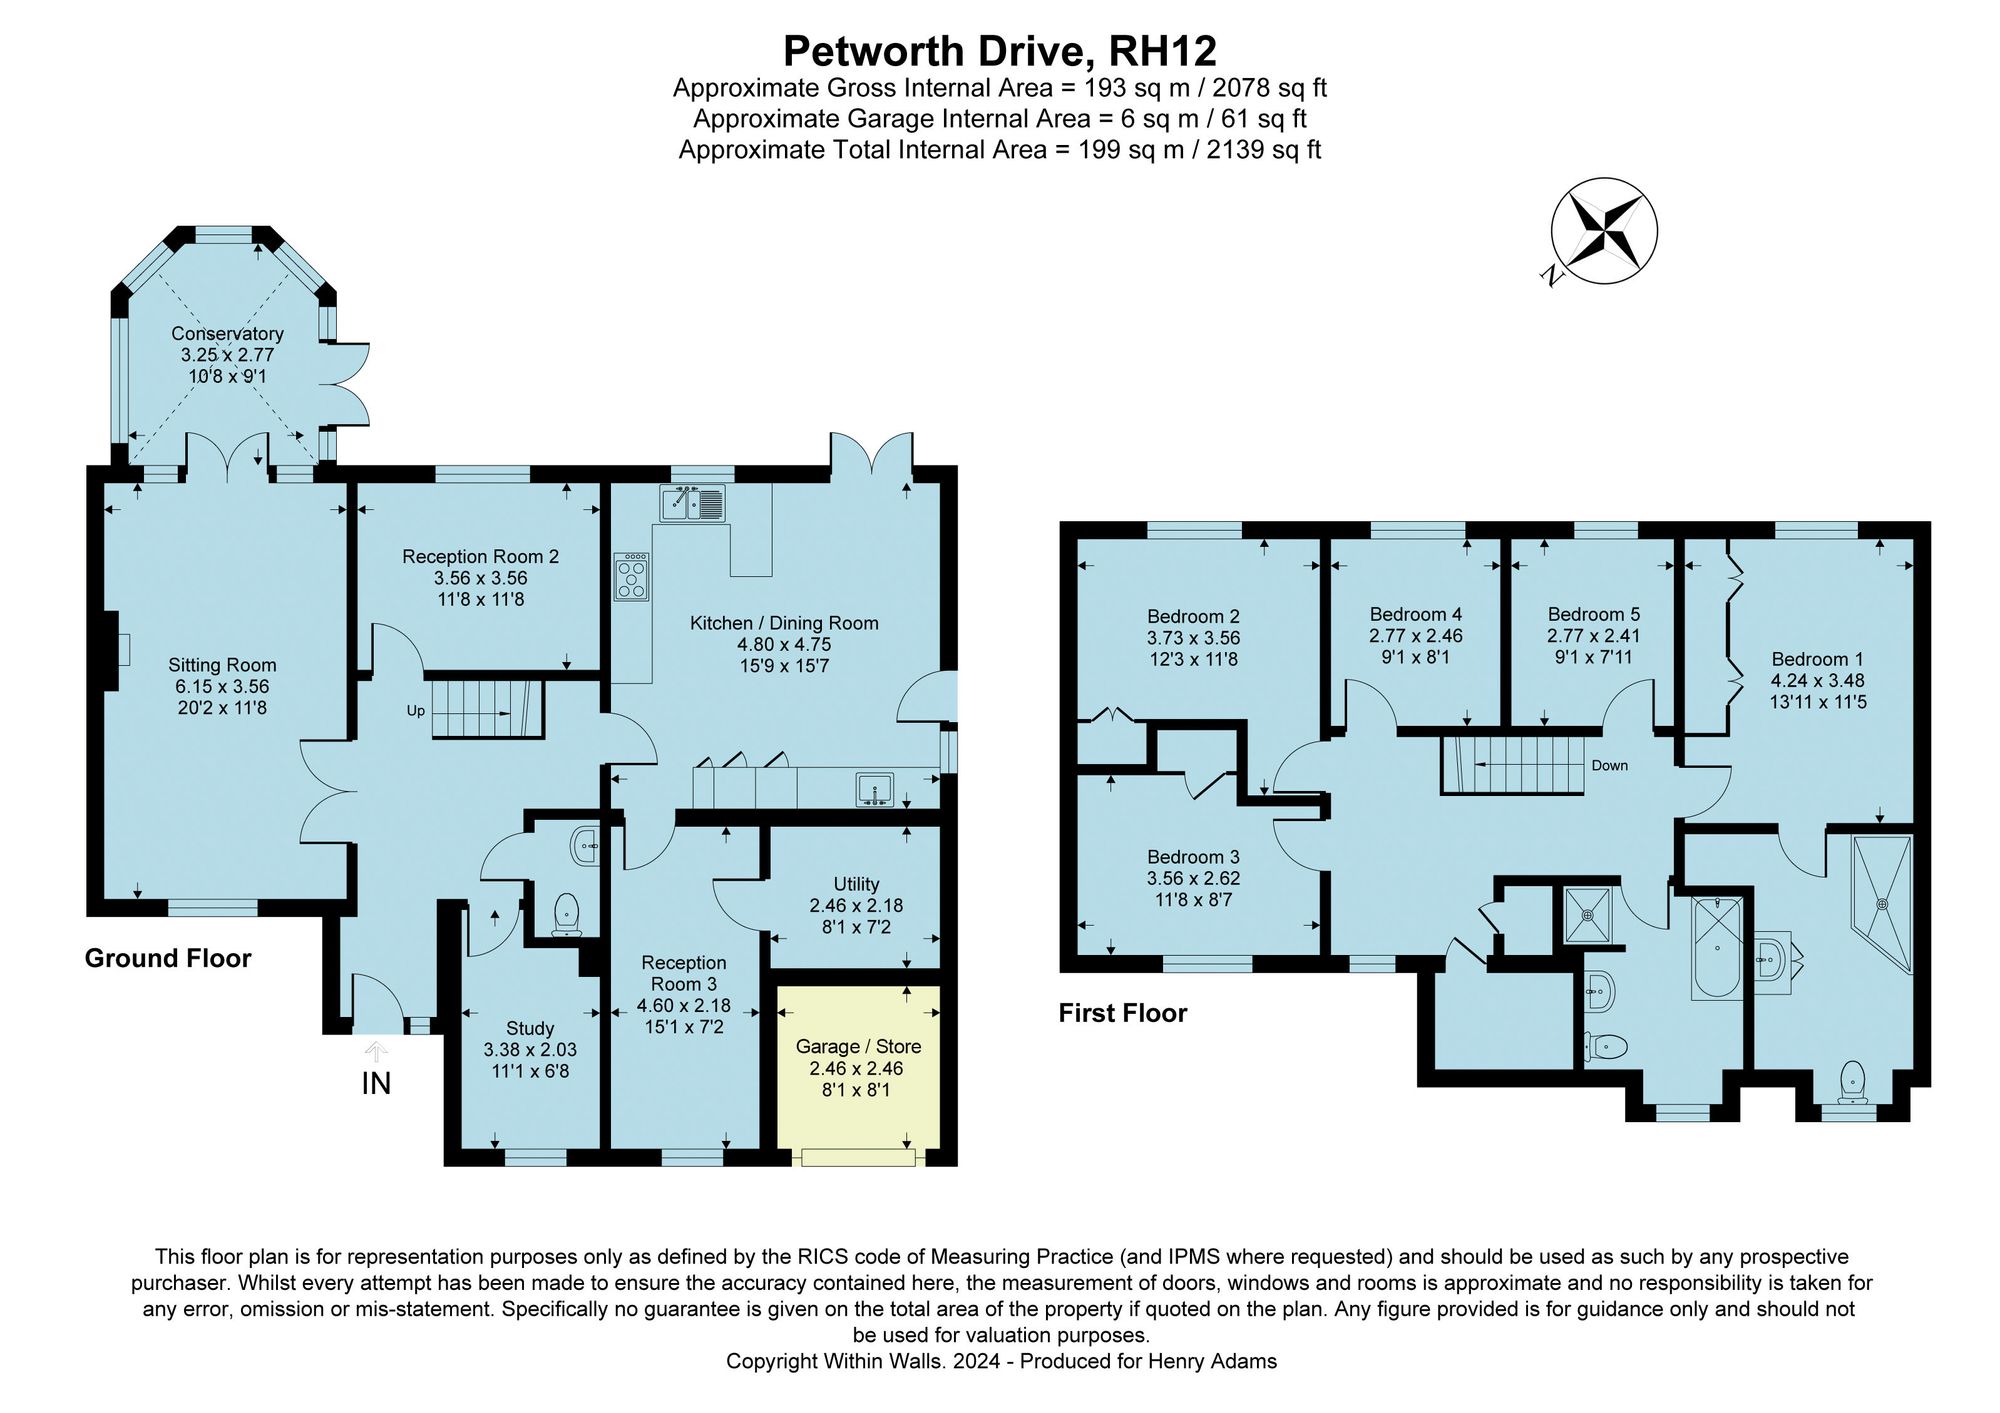 Petworth Drive, Horsham, RH12 floorplans